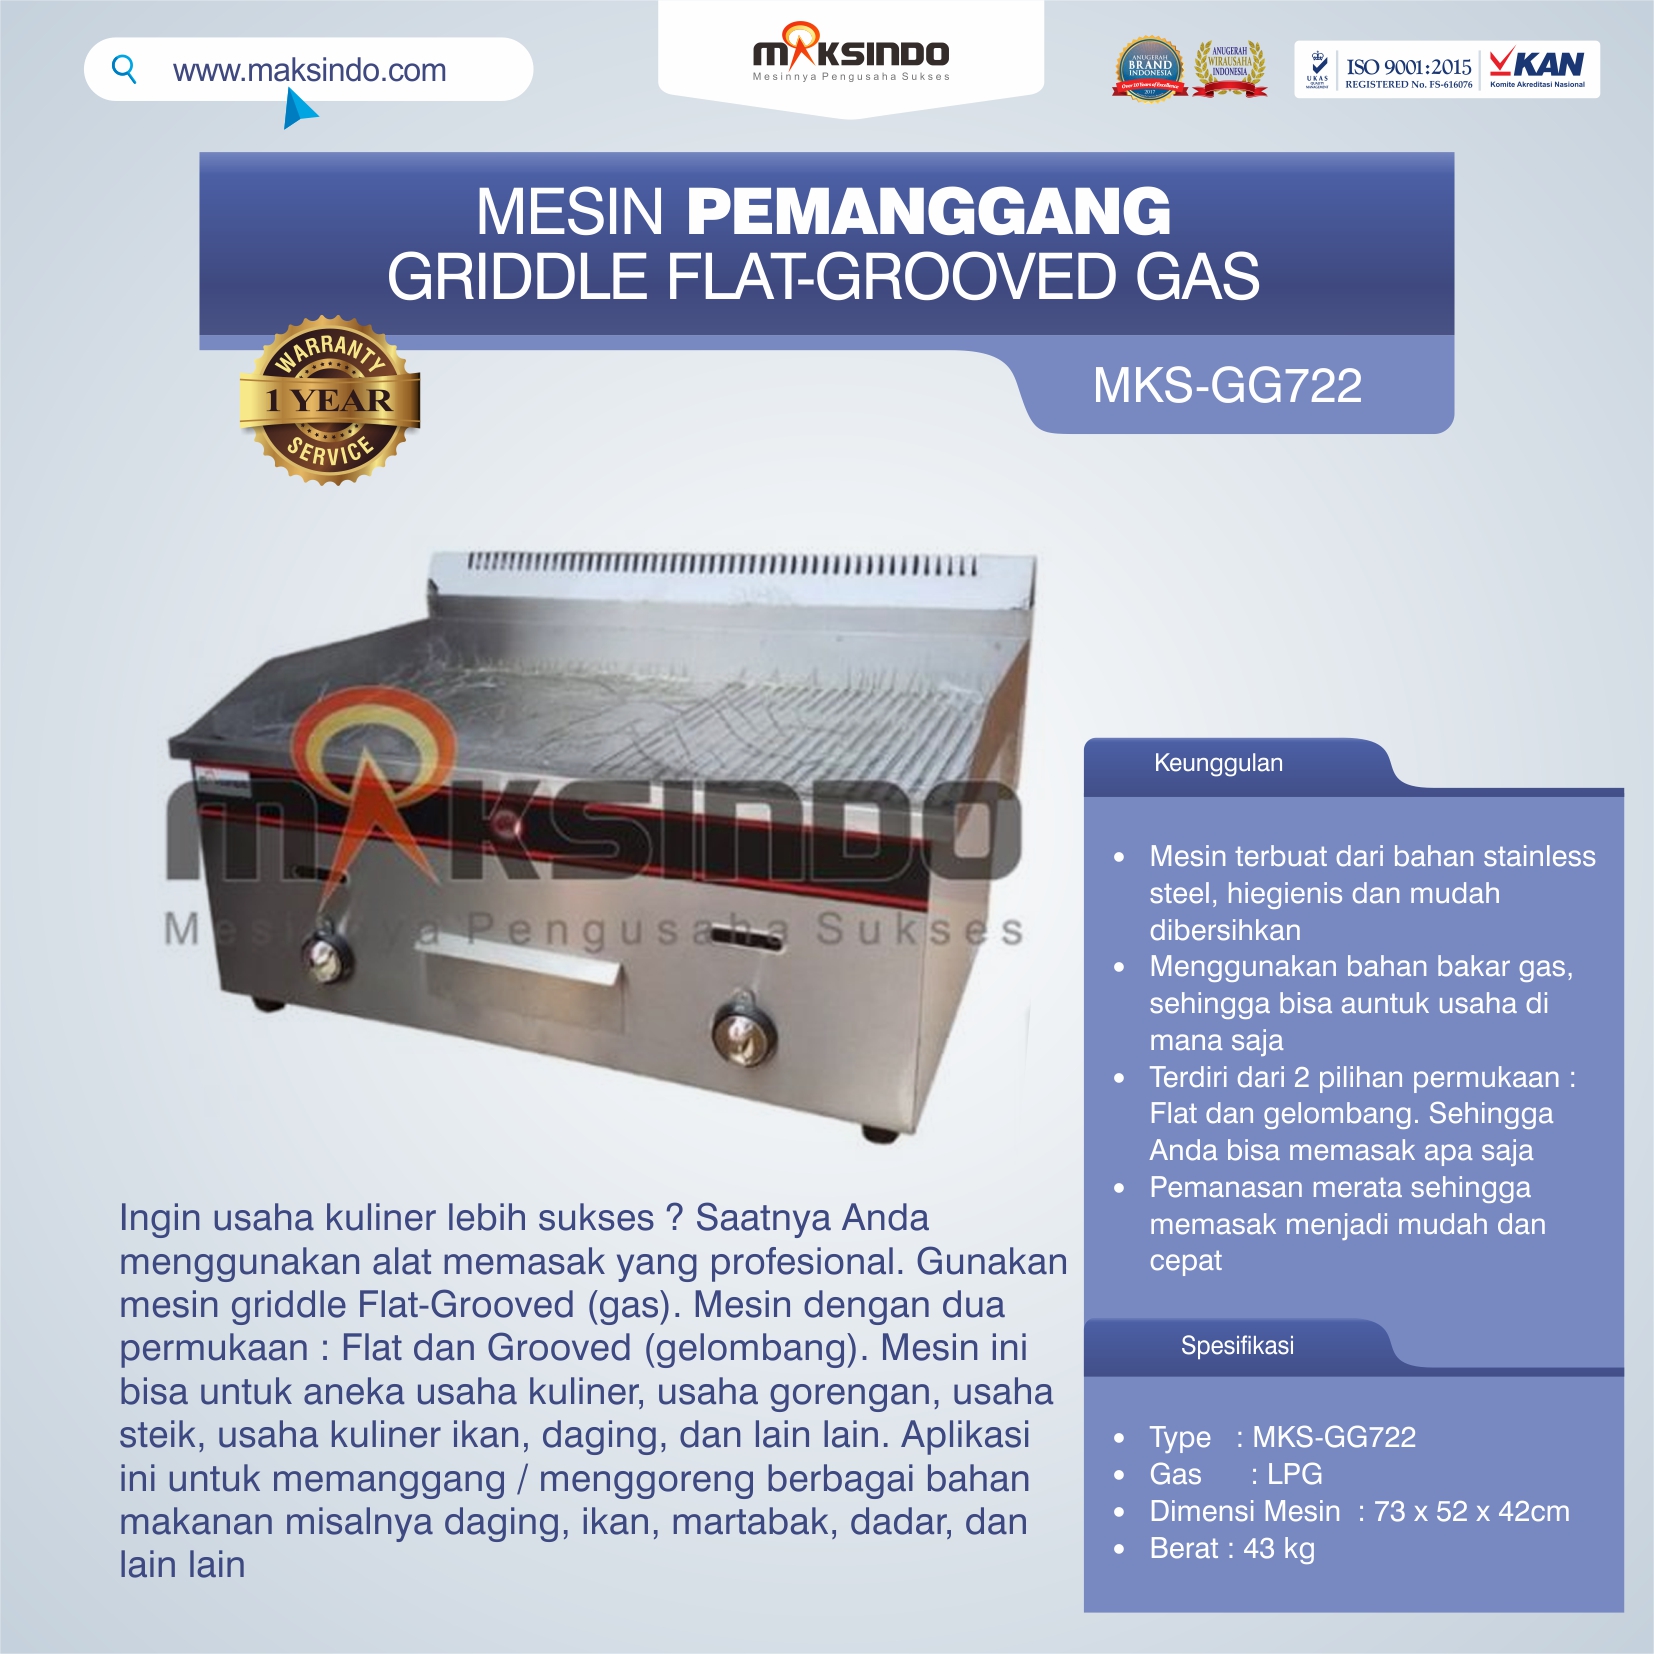 Jual Pemanggang Griddle Flat-Grooved Gas (GG722) di Tangerang